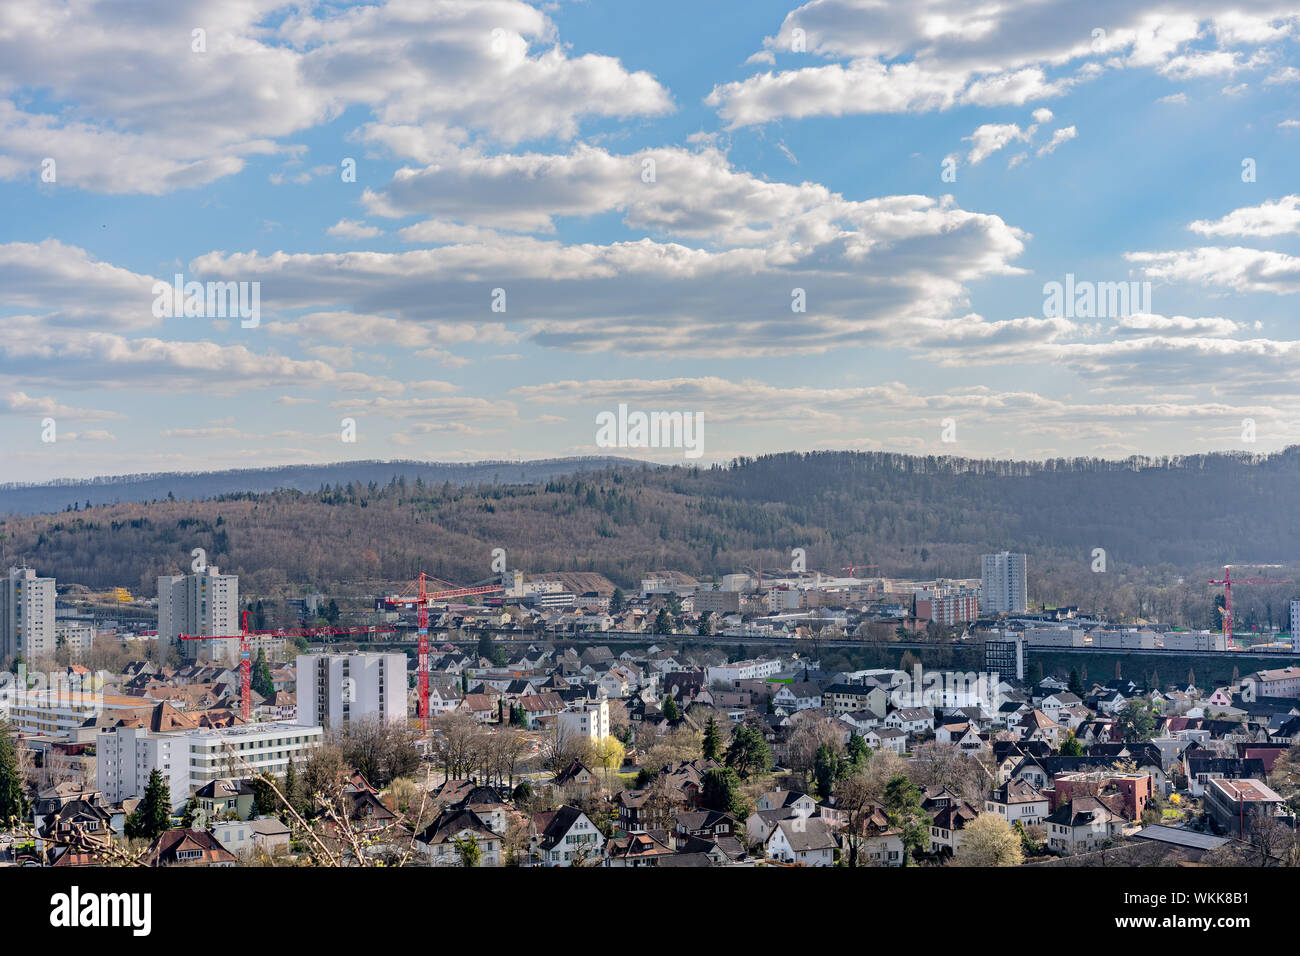 Paesaggio di Brugg a ovest con i quartieri residenziali, l'industria e il terrapieno della ferrovia. Foto Stock